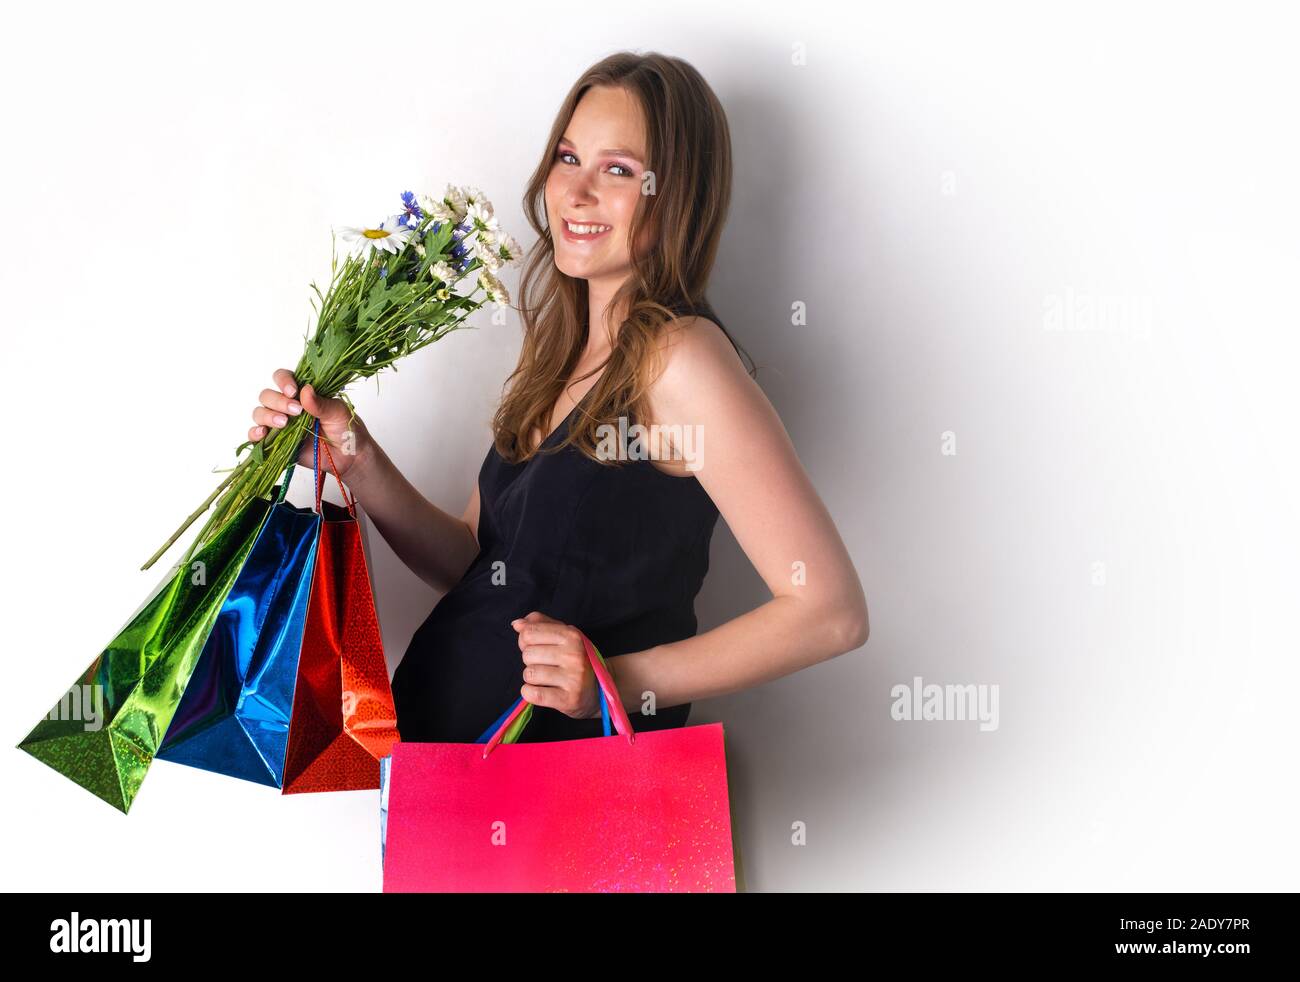 Une fille enceinte installée contre le mur avec des fleurs et les sacs du magasin. Joyful woman holding shopping bags bouquet de fleurs Banque D'Images